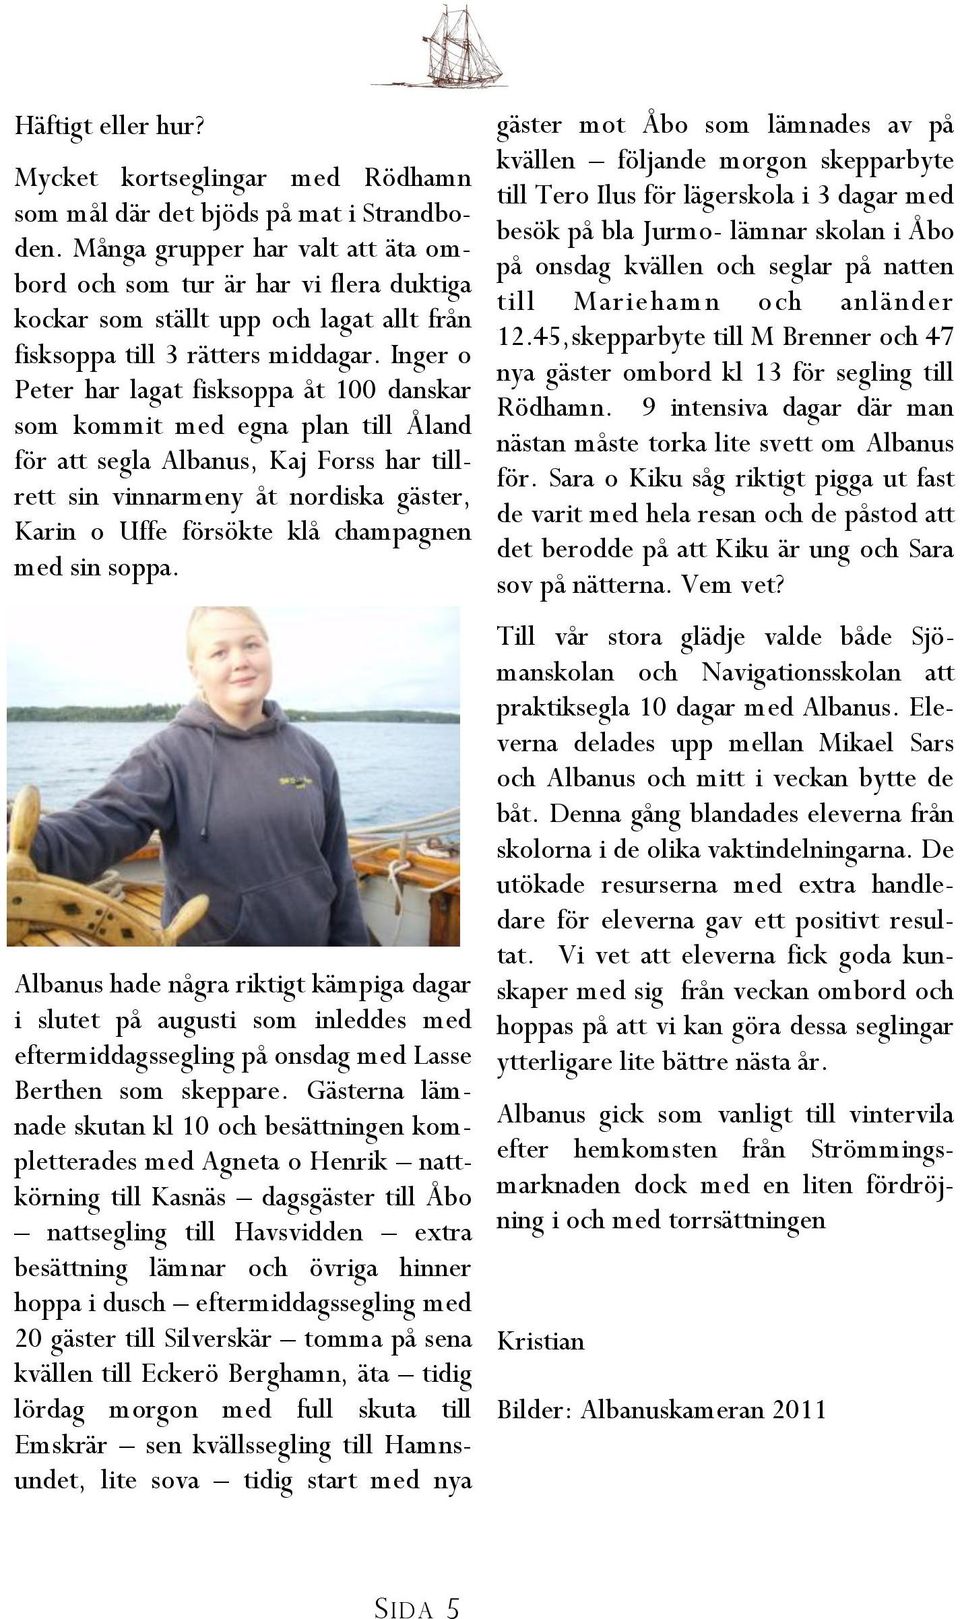 Inger o Peter har lagat fisksoppa åt 100 danskar som kommit med egna plan till Åland för att segla Albanus, Kaj Forss har tillrett sin vinnarmeny åt nordiska gäster, Karin o Uffe försökte klå